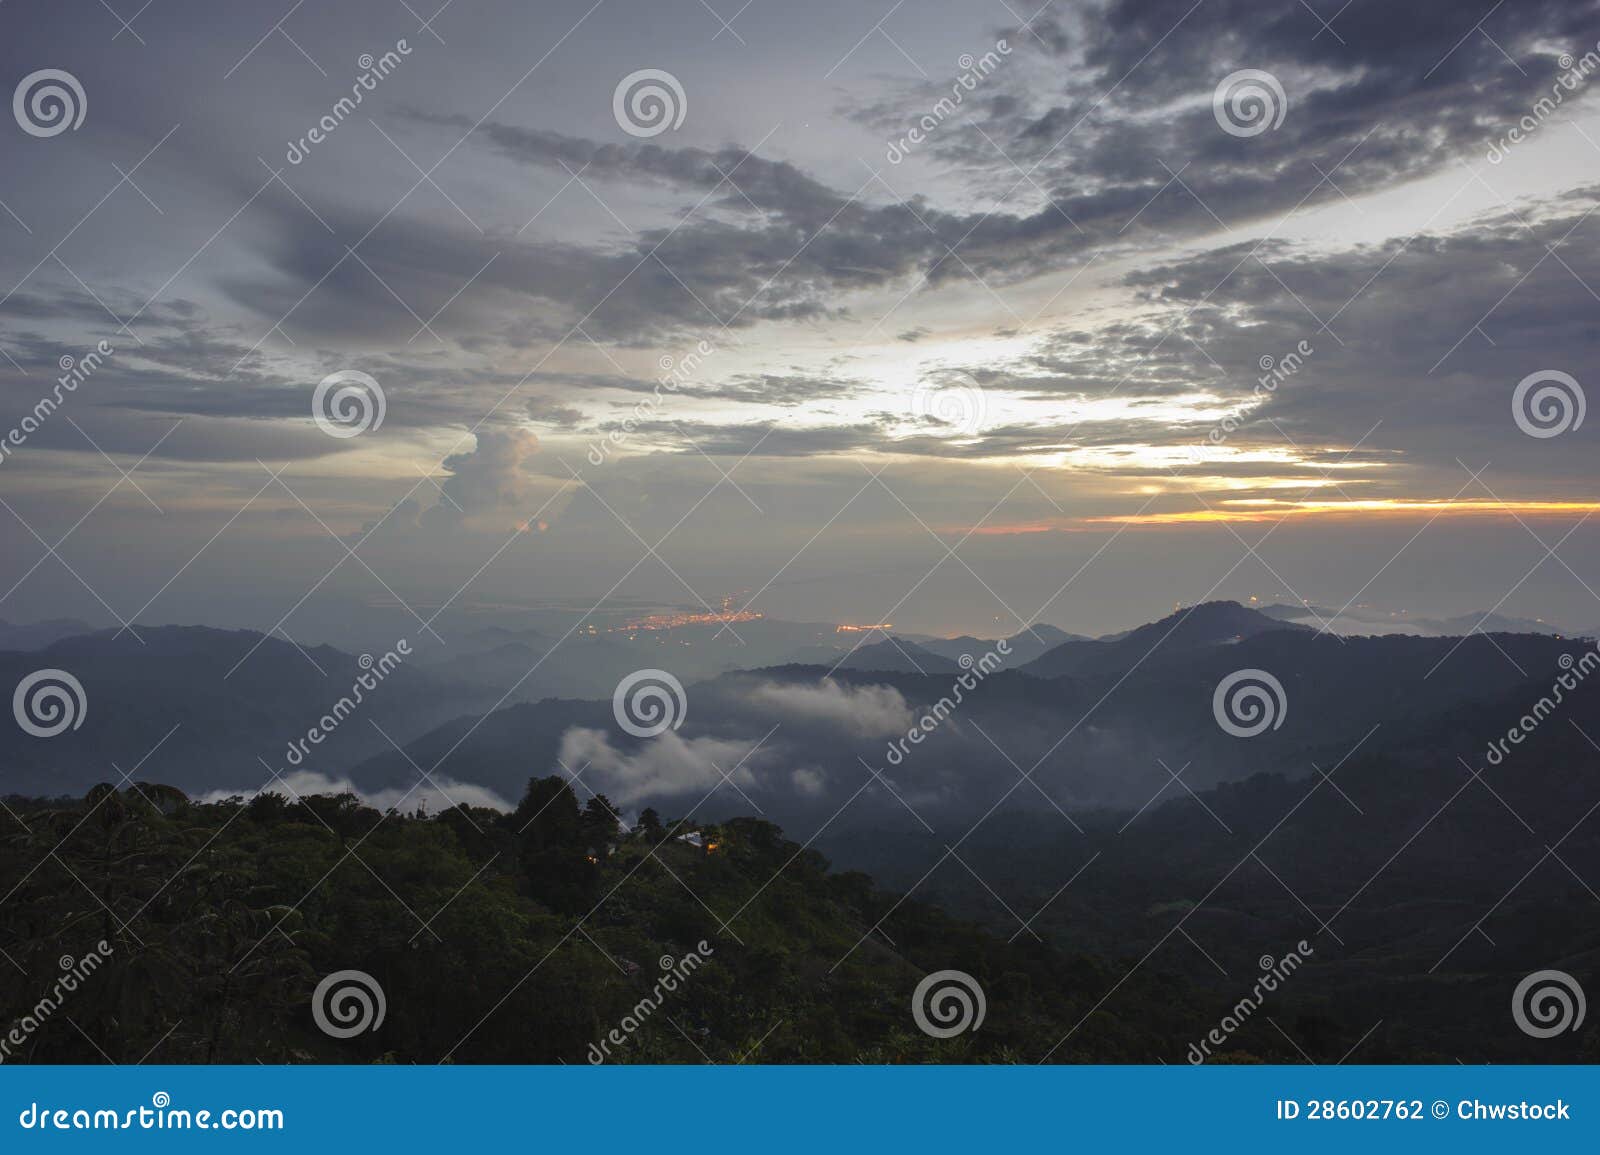 colombia - dawn over the sierra nevada de santa marta